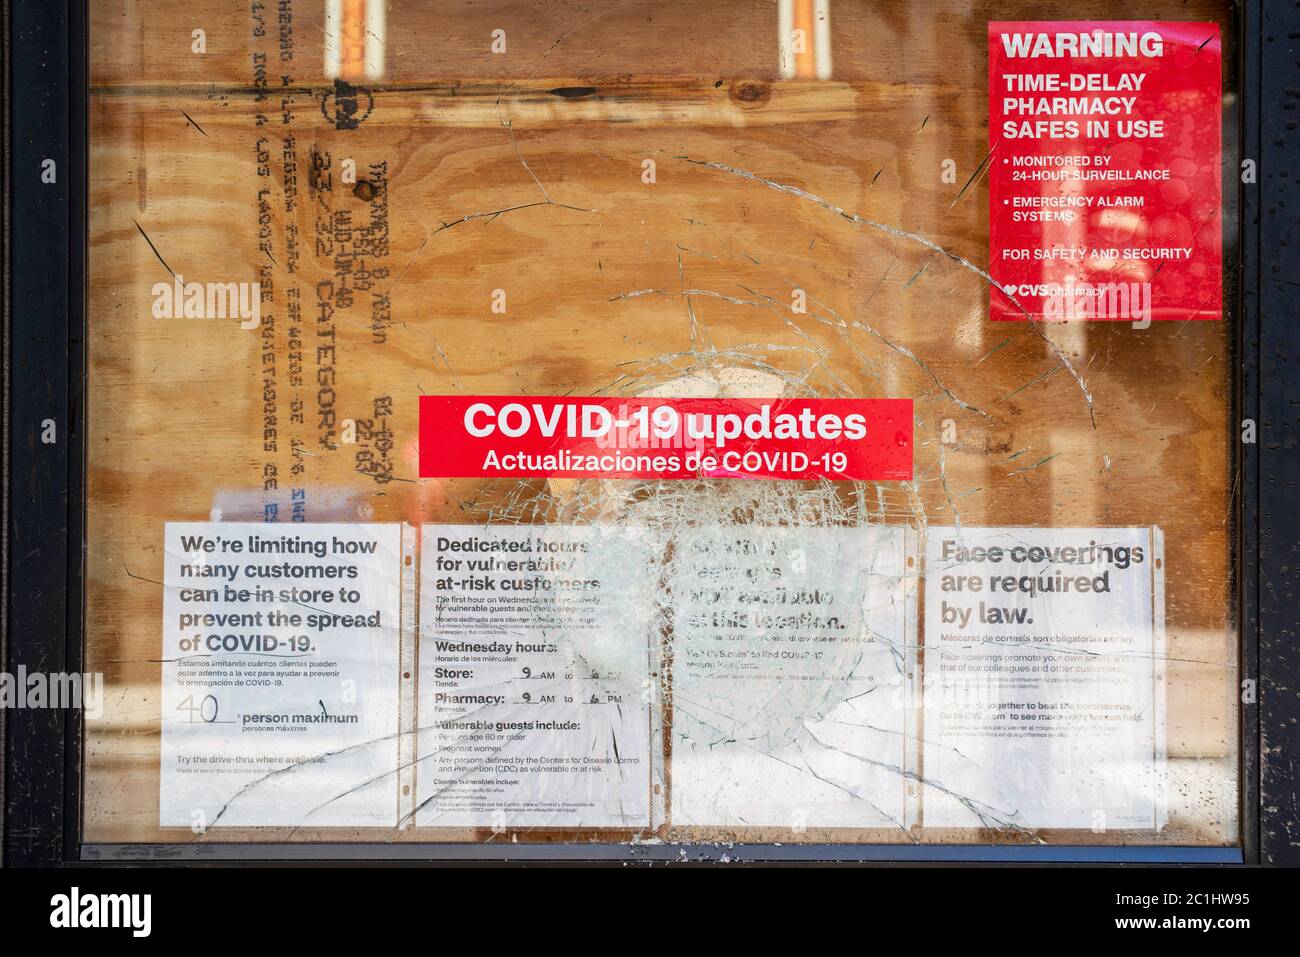 LOUISVILLE - 31 MAI 2020 : mises à jour et avertissements de la COVID-19 dans la fenêtre de bord d'une pharmacie écrasée lors de manifestations à Louisville au cours de la p Banque D'Images